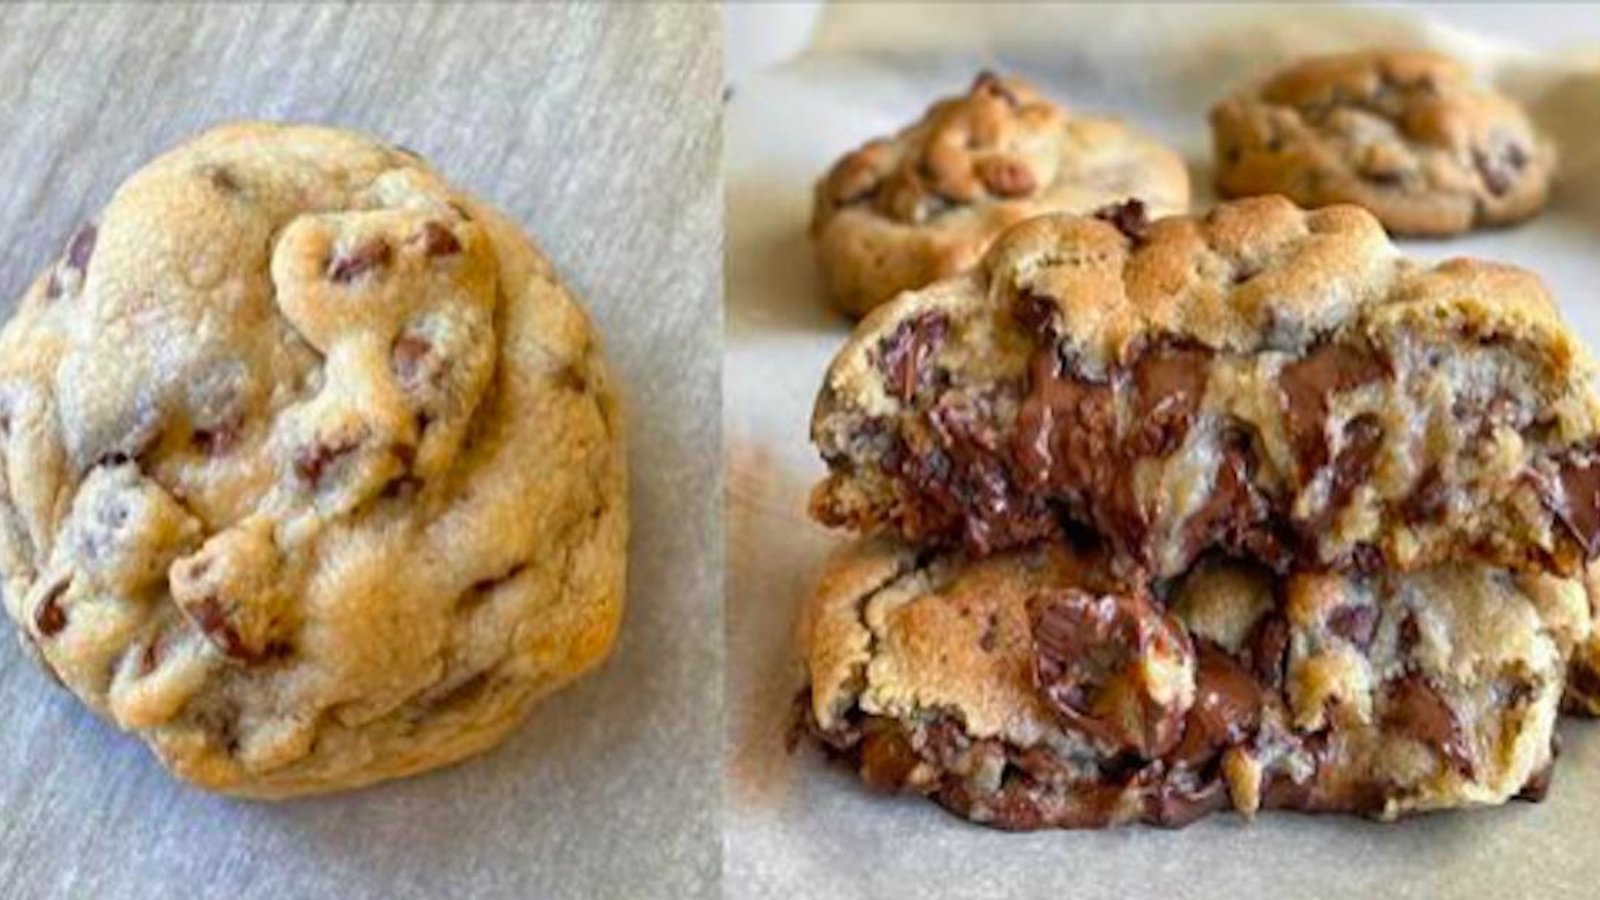 La recette des biscuits aux pépites de chocolats épais les plus moelleux de la Terre